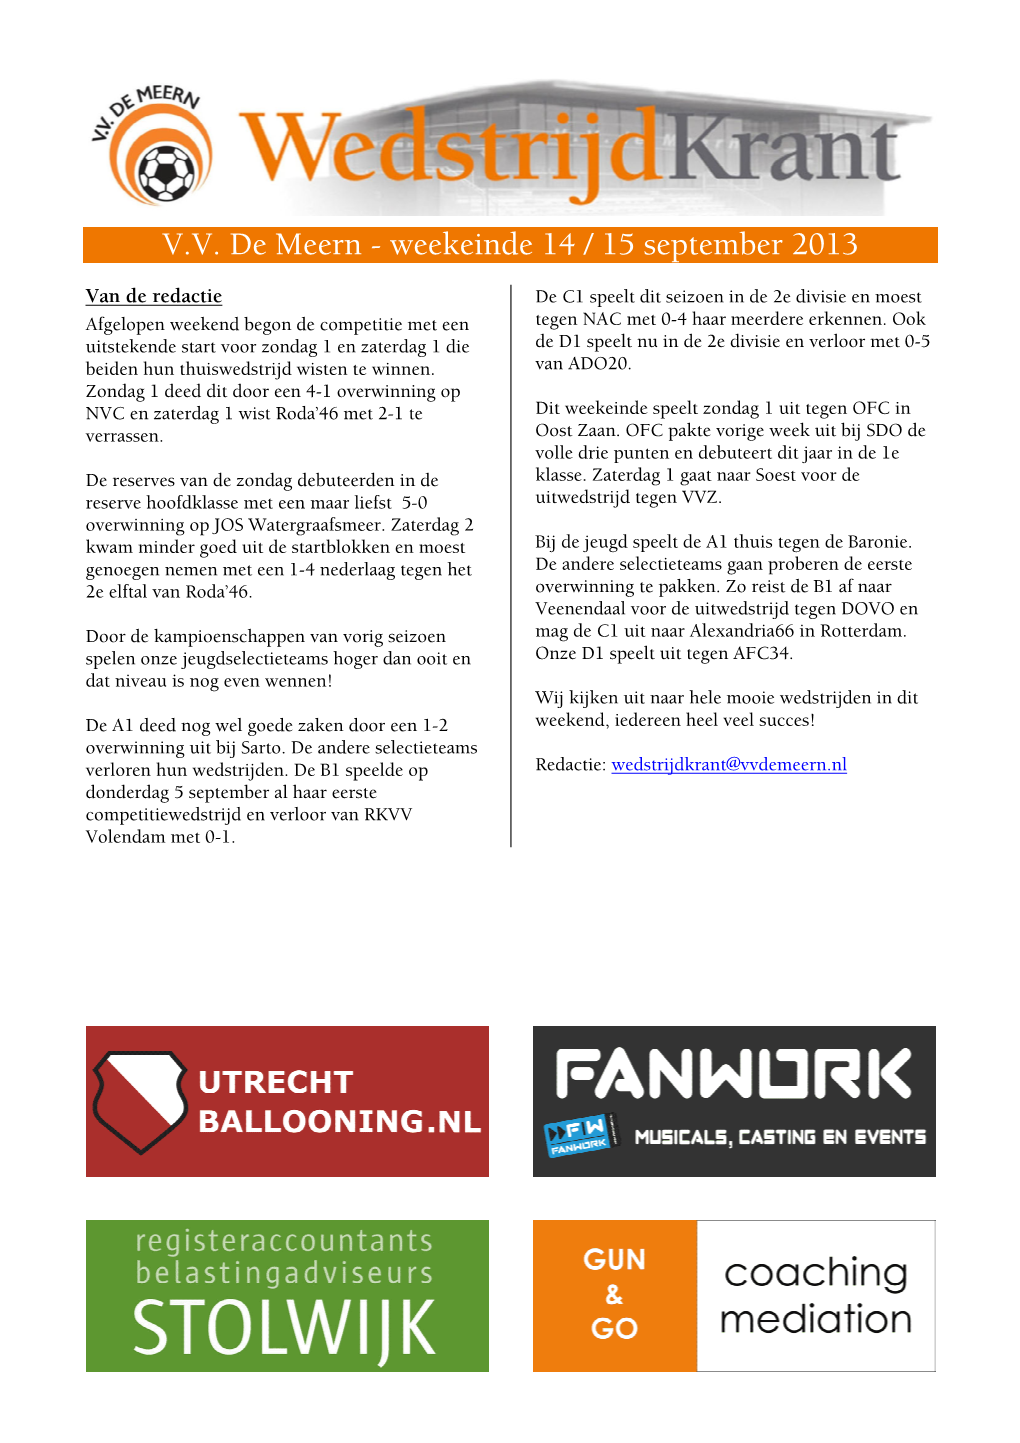 V.V. De Meern - Weekeinde 14 / 15 September 2013